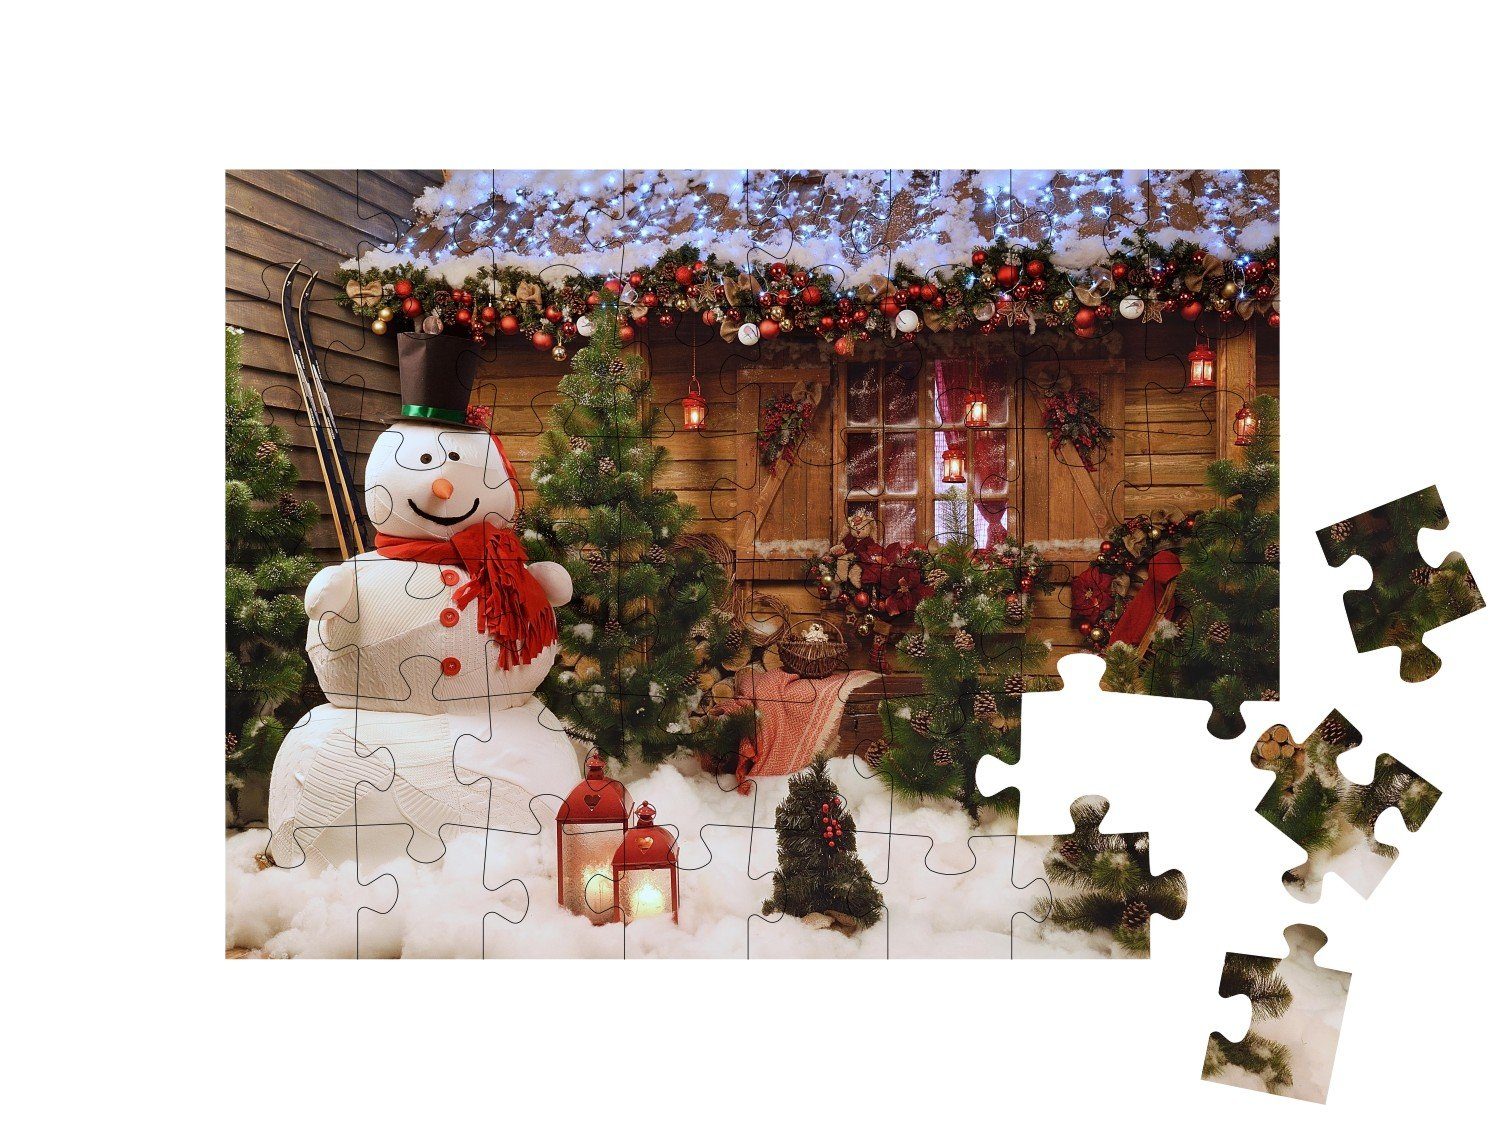 48 Weihnachtsfoto Festtagsstimmung: Puzzleteile, Schneemann, mit puzzleYOU-Kollektionen puzzleYOU Puzzle Weihnachten